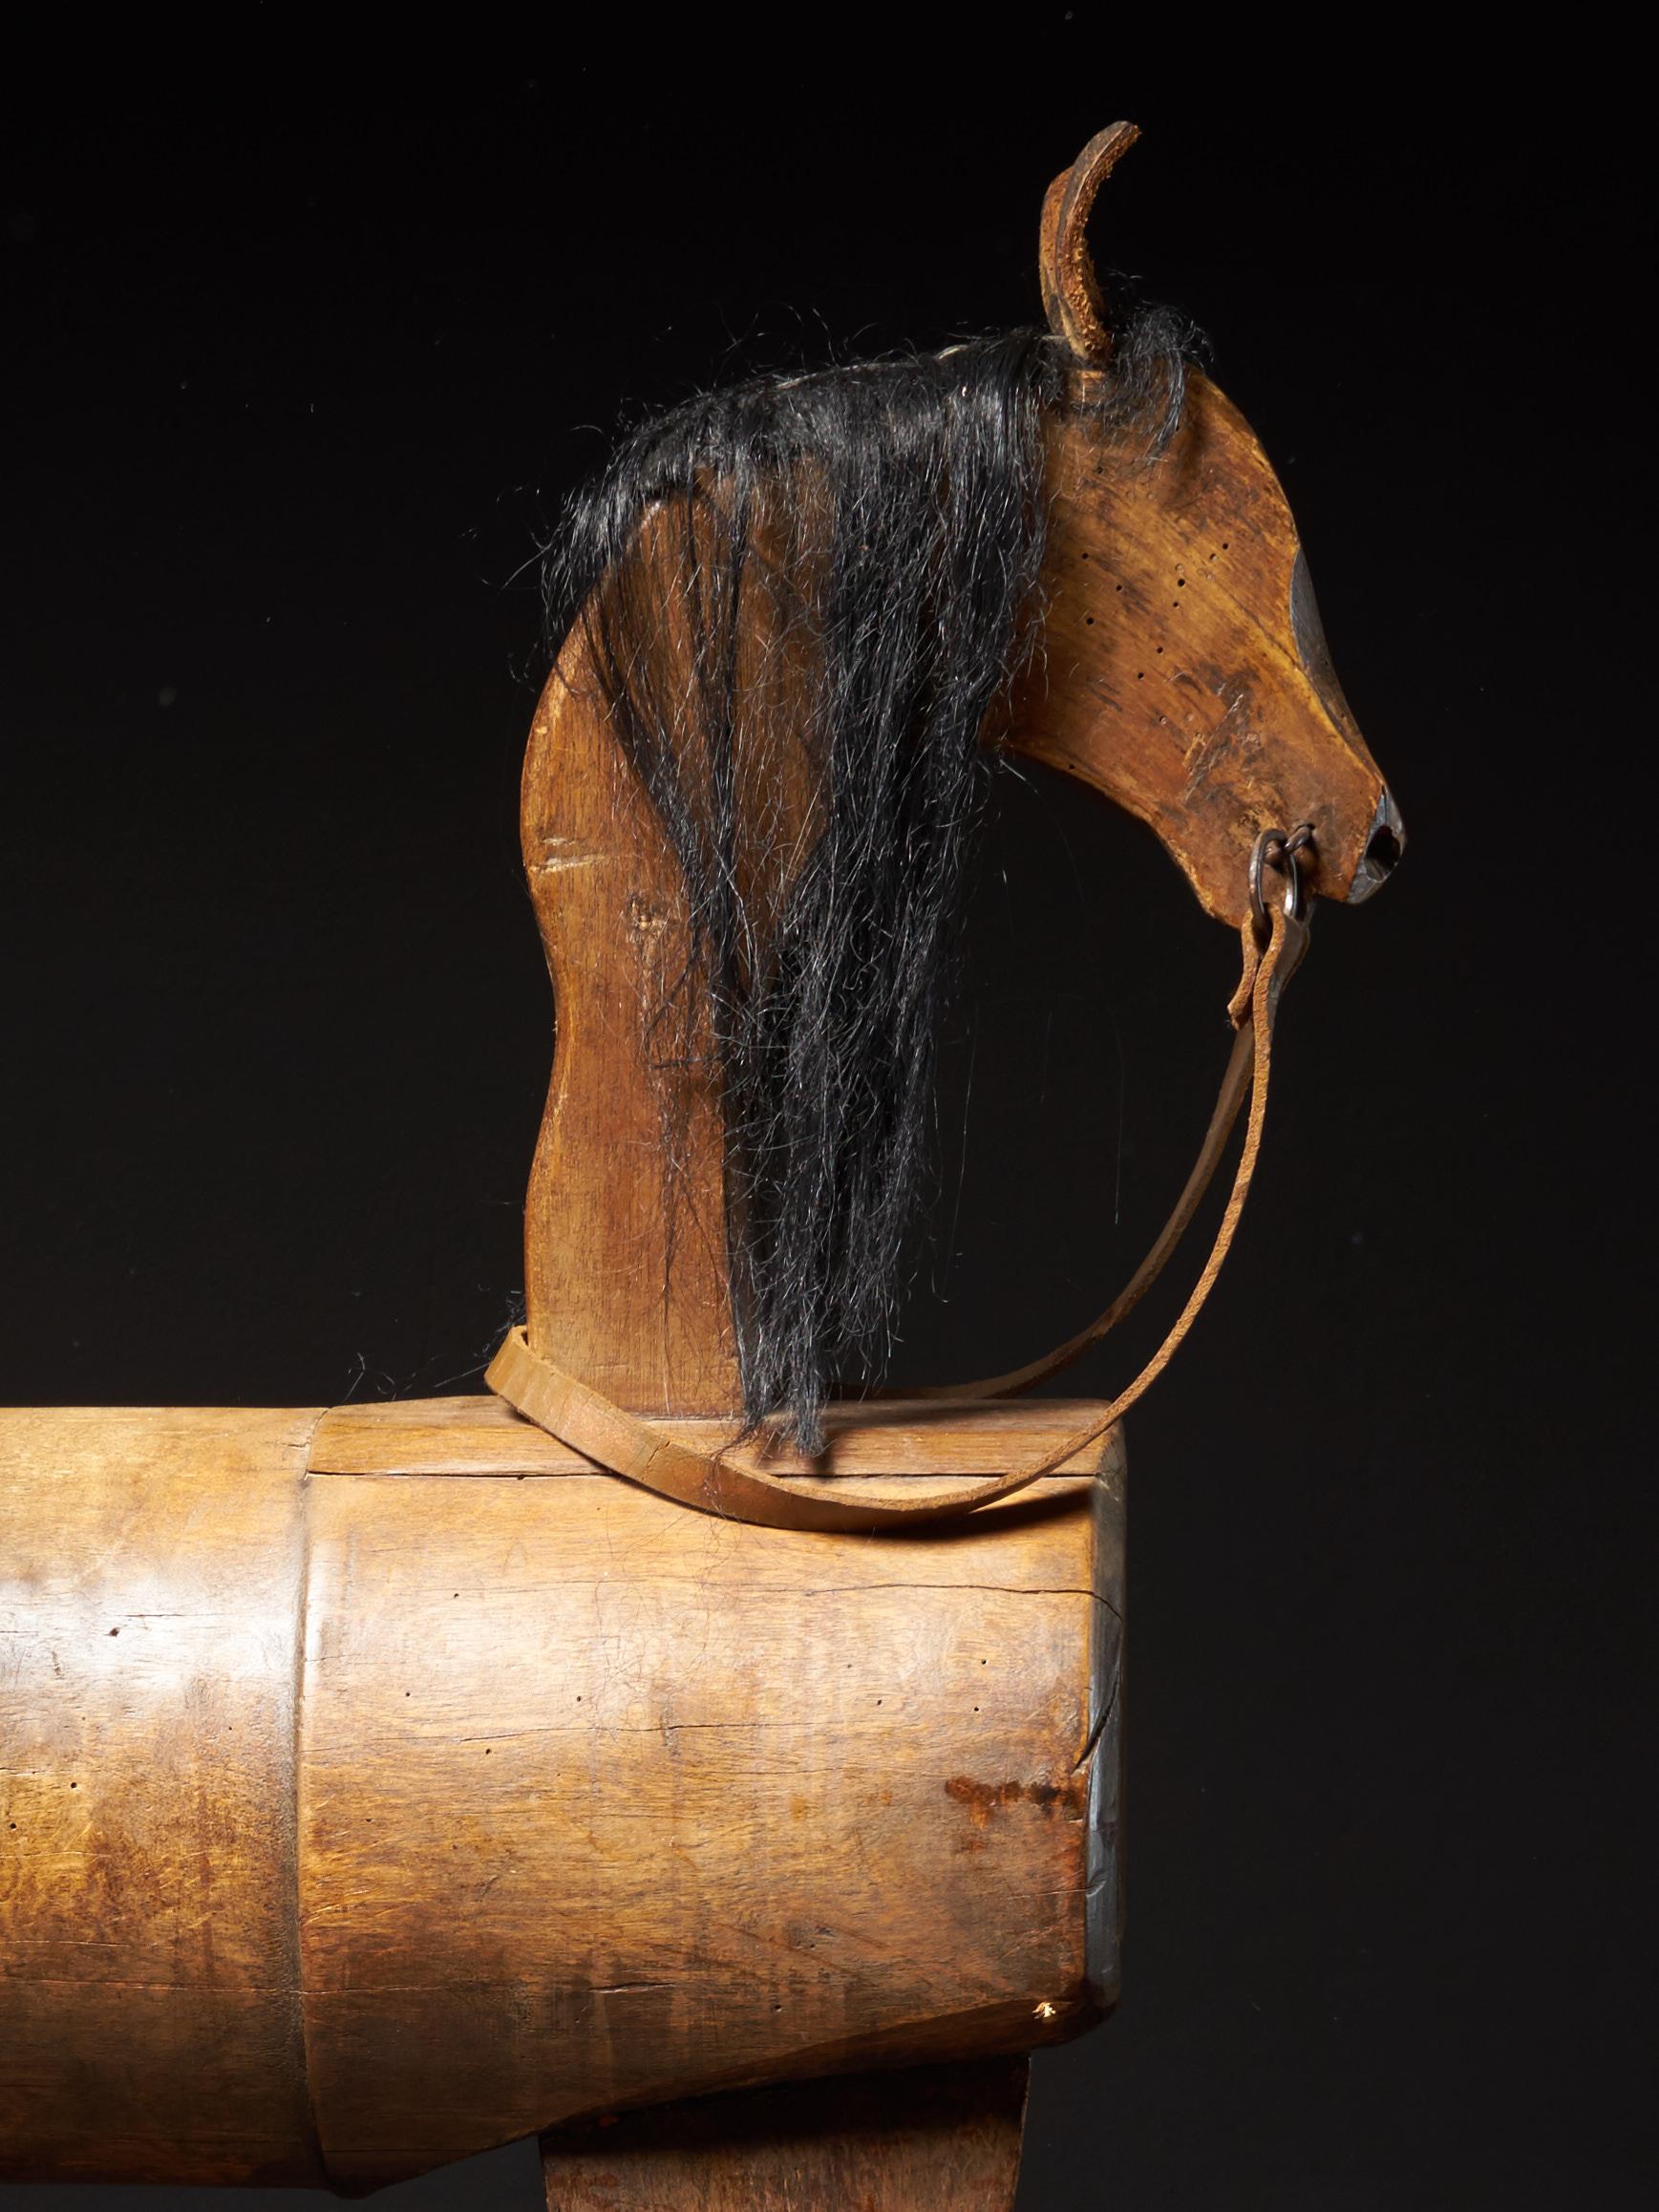 vintage wooden rocking horse